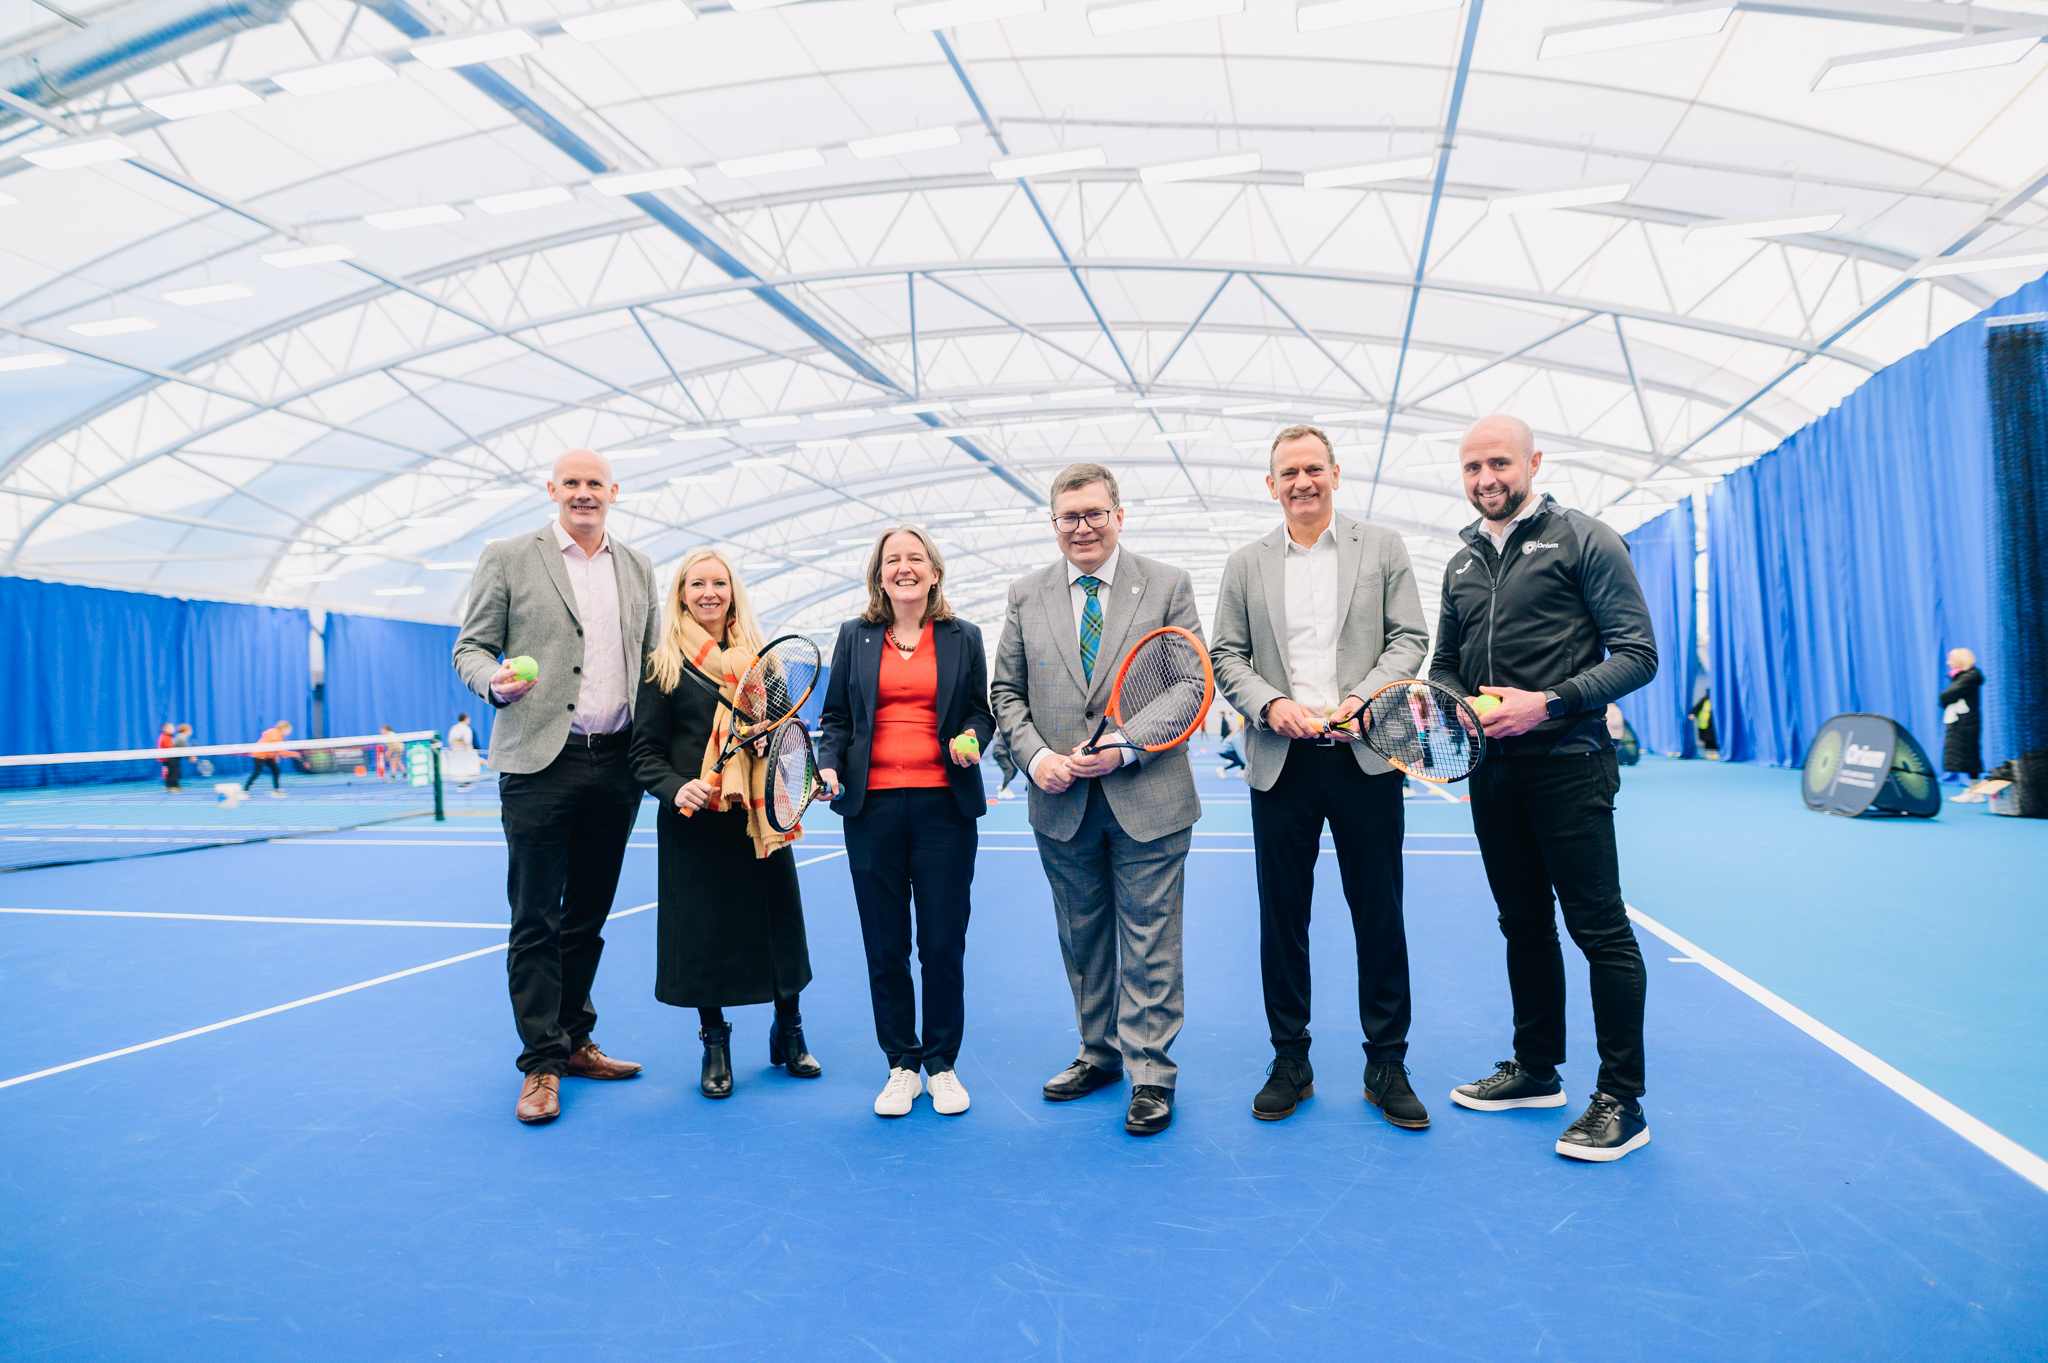 Oriam Indoor Tennis Centre opens its doors